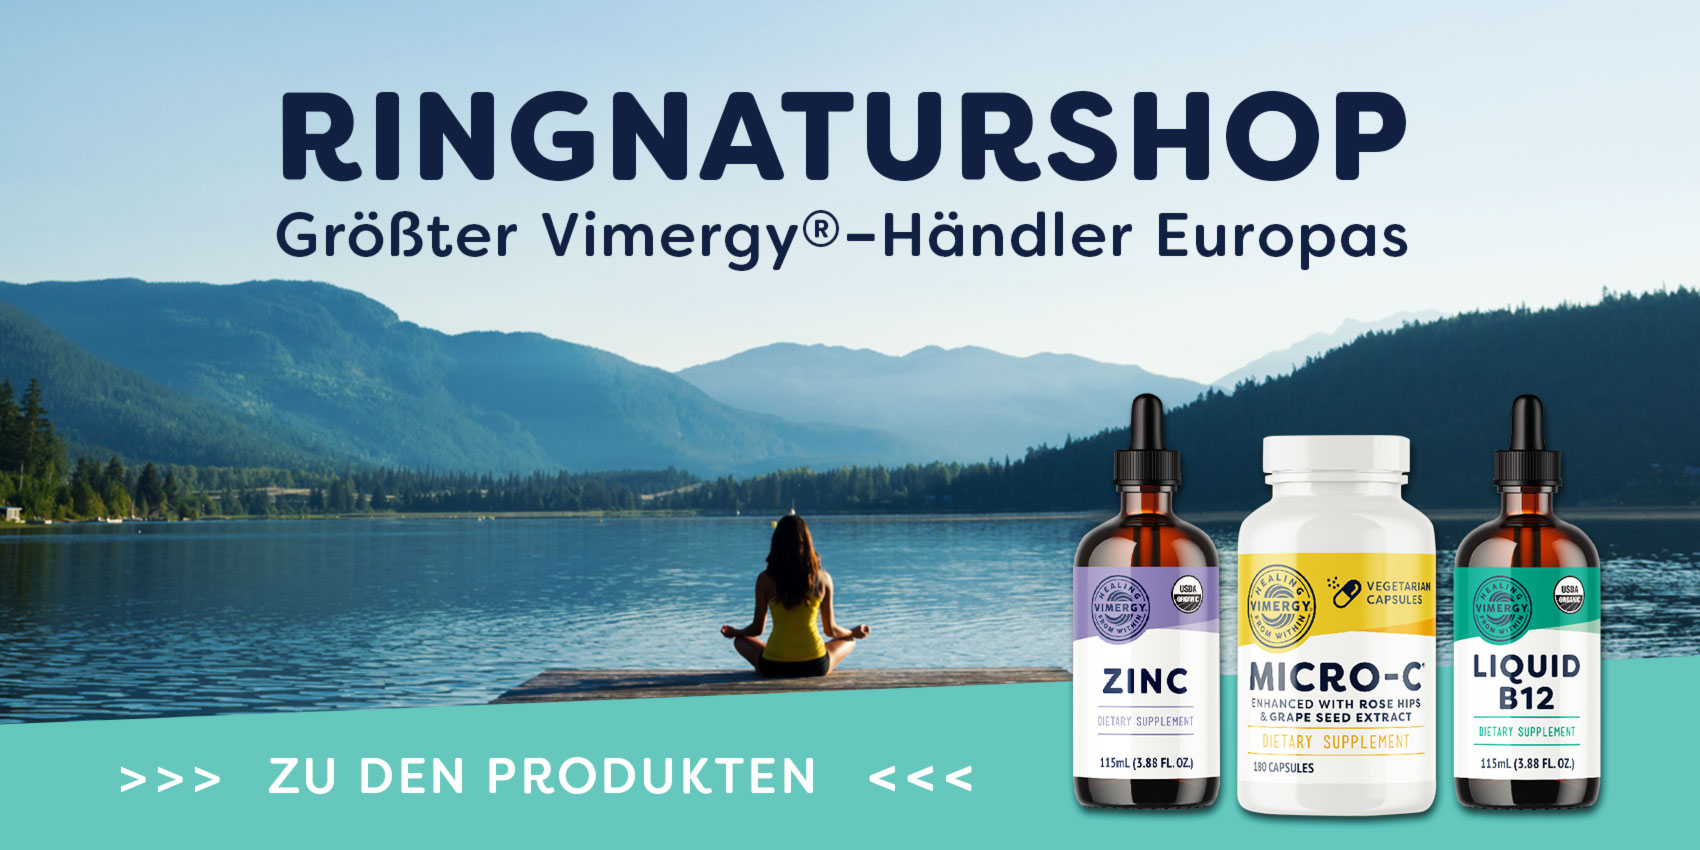 Ringnaturshop - největší prodejce Vimergy v Evropě